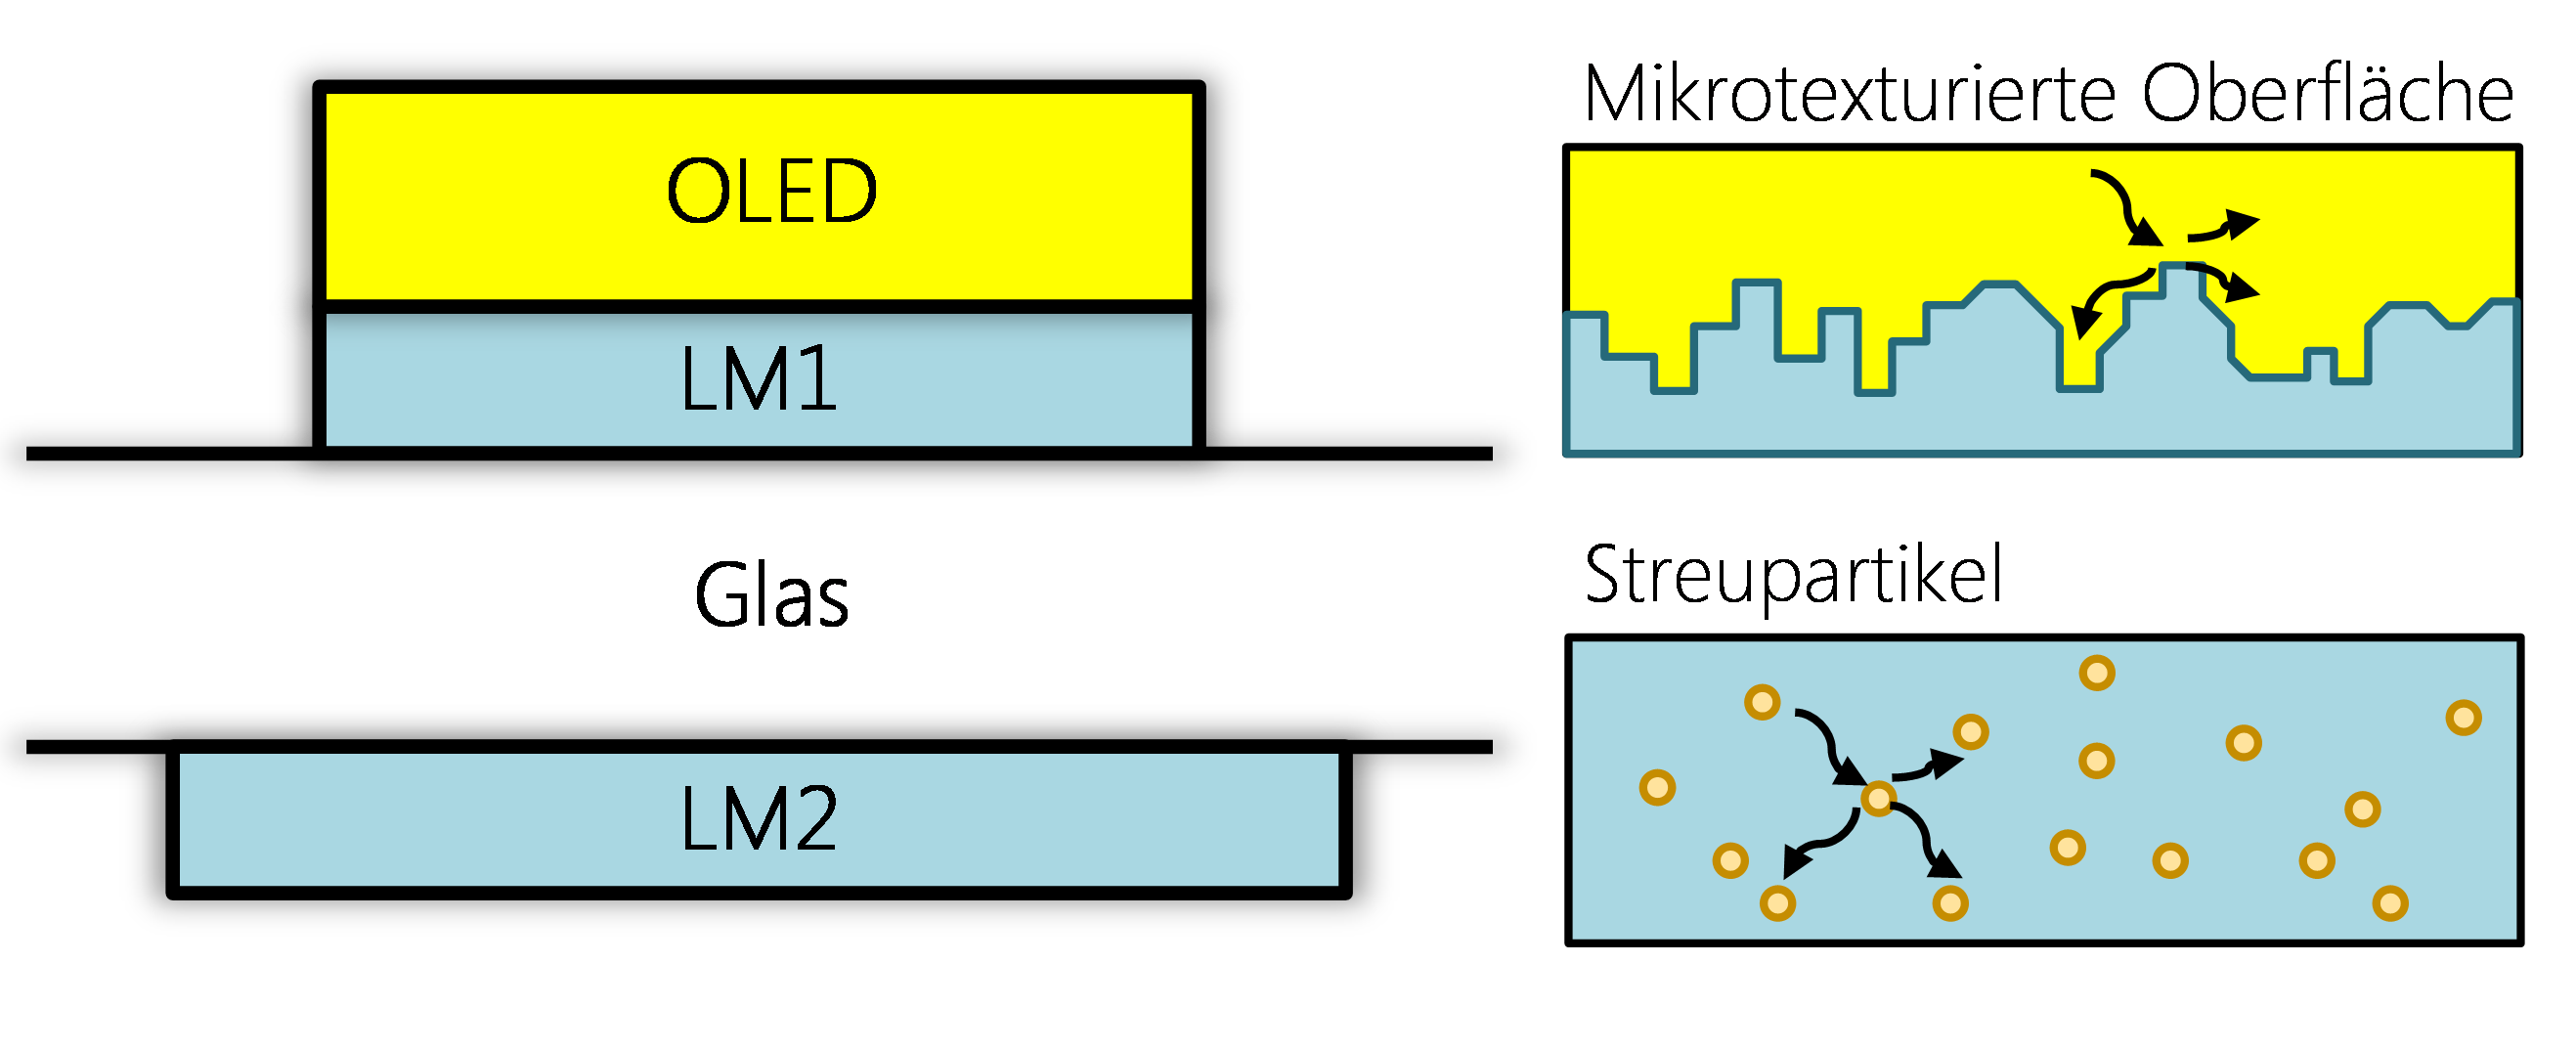 Das Bild zeigt einen schematischen Querschnitt durch eine OLED sowie zwei Arten der Streuung: einmal durch eine raue Oberfläche, einmal durch Streupartikel